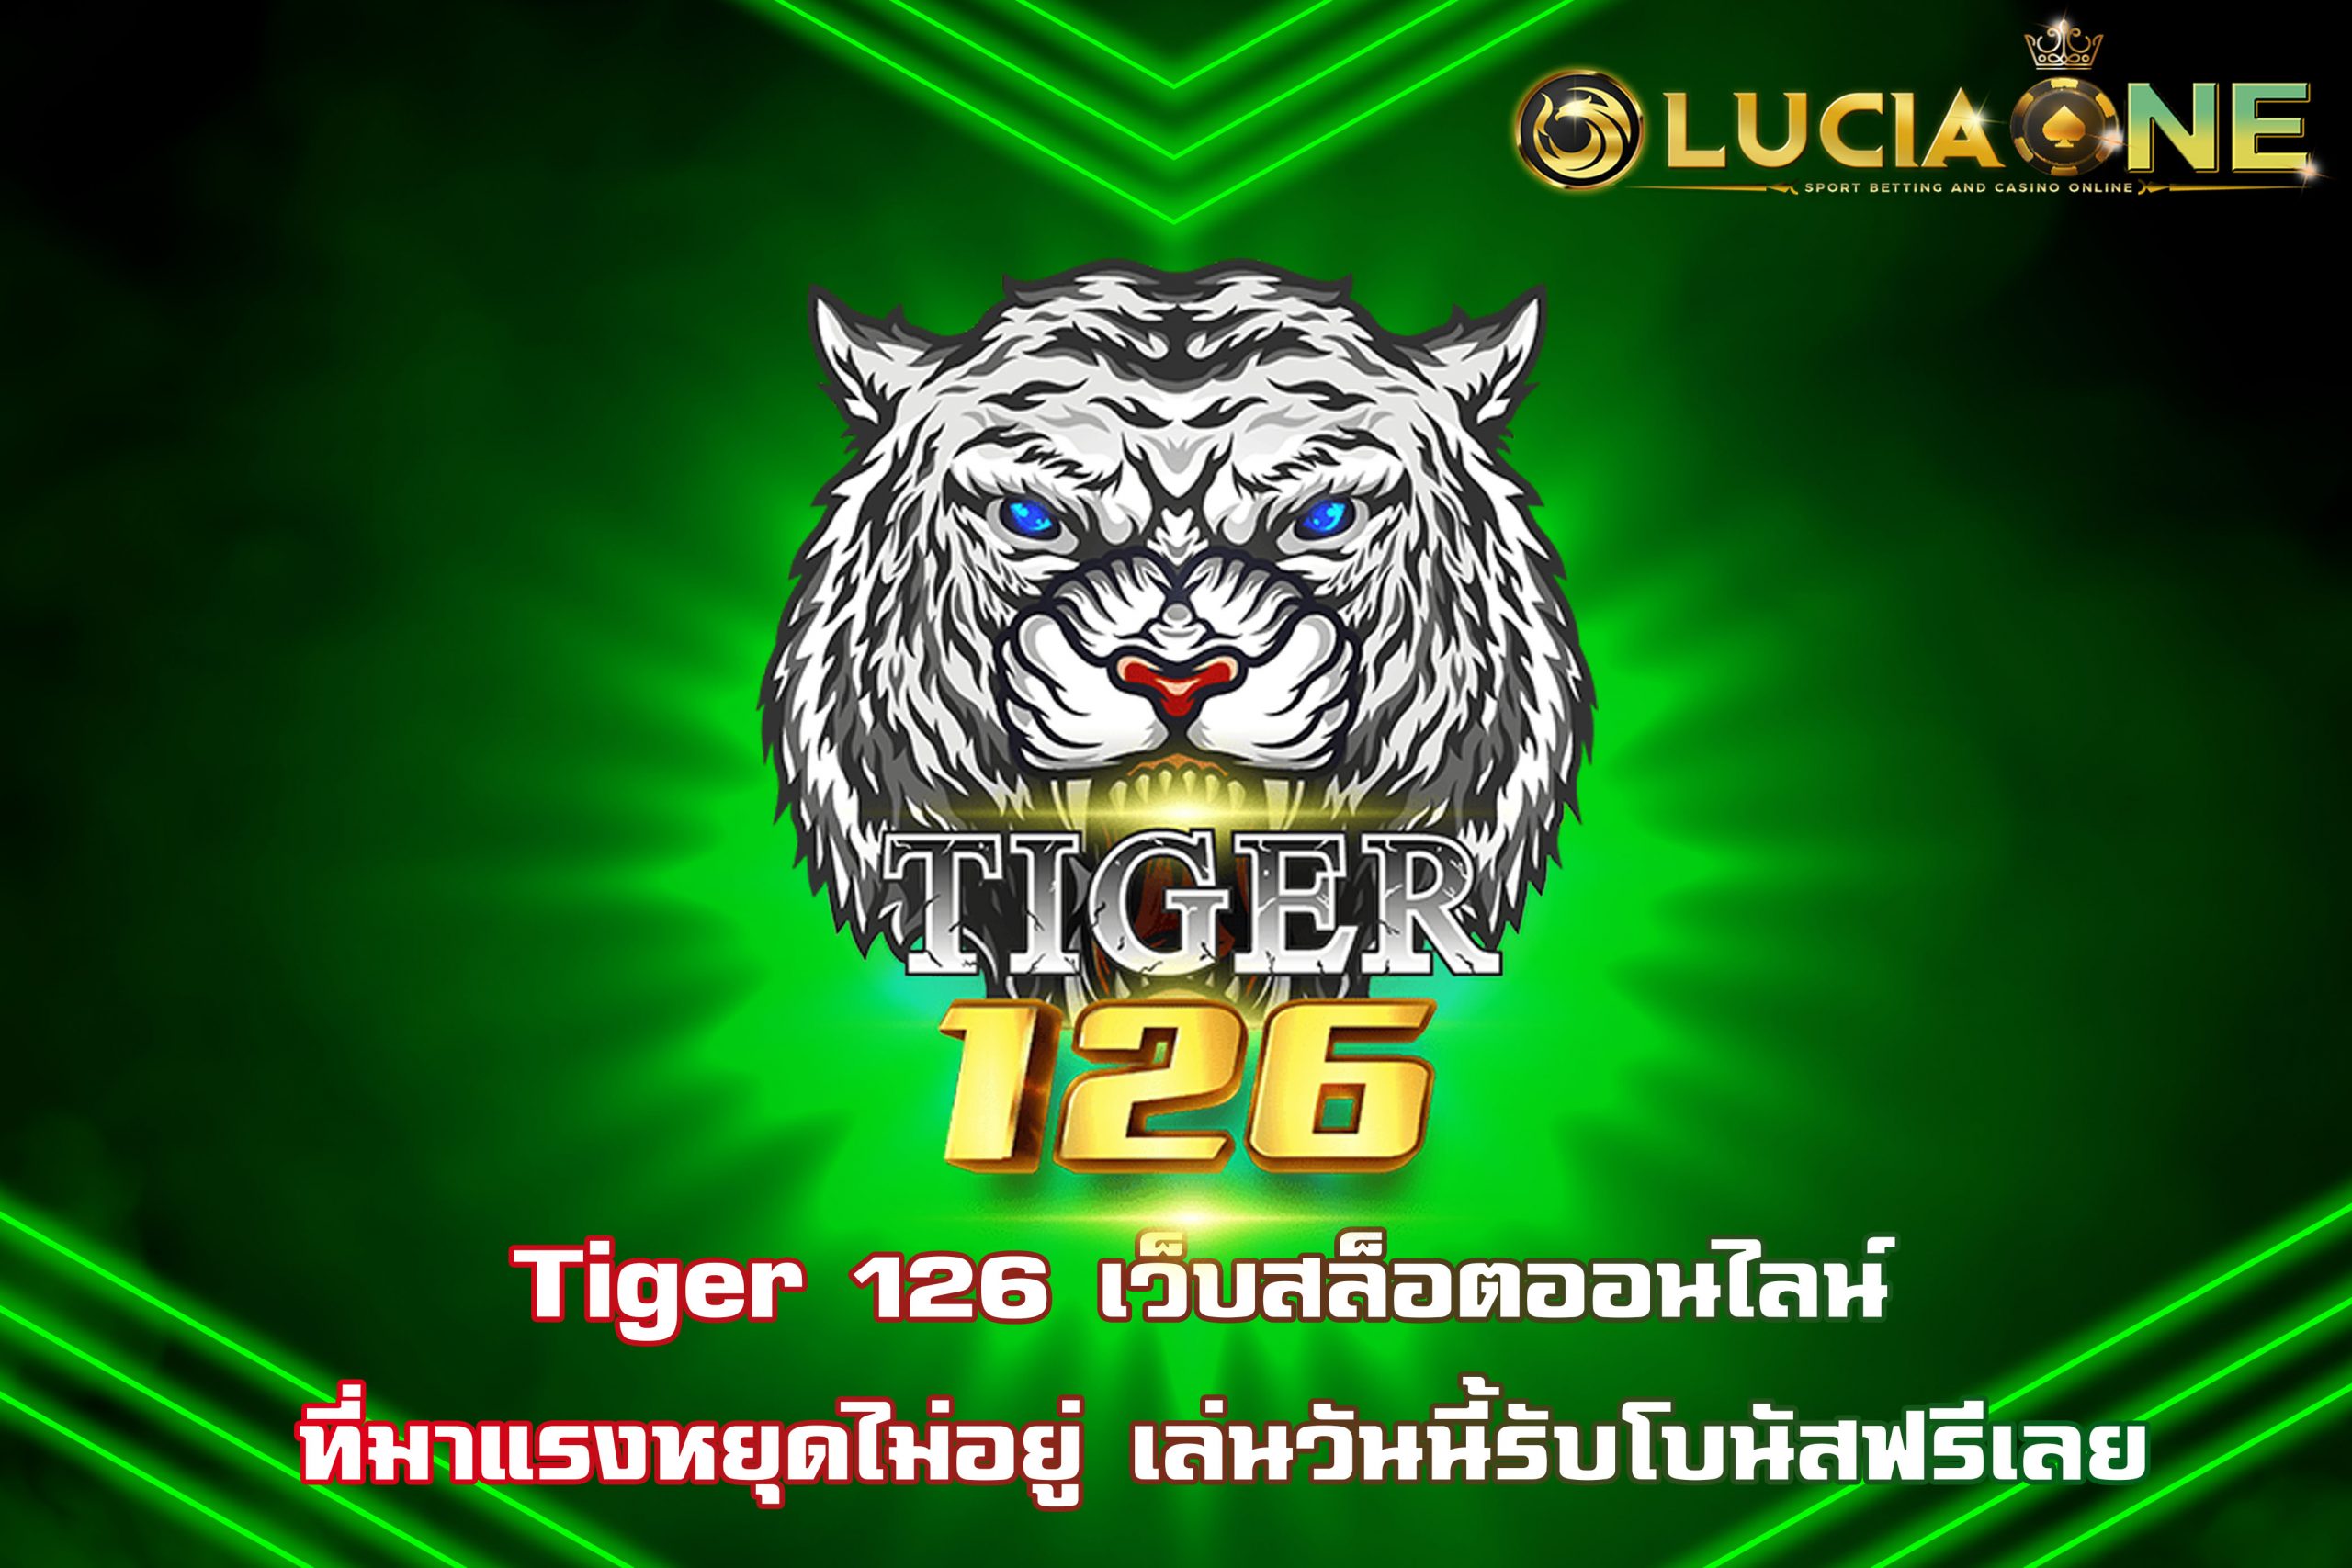 Tiger 126 เว็บสล็อตออนไลน์ ที่มาแรงหยุดไม่อยู่ เล่นวันนี้รับโบนัสฟรีเลย